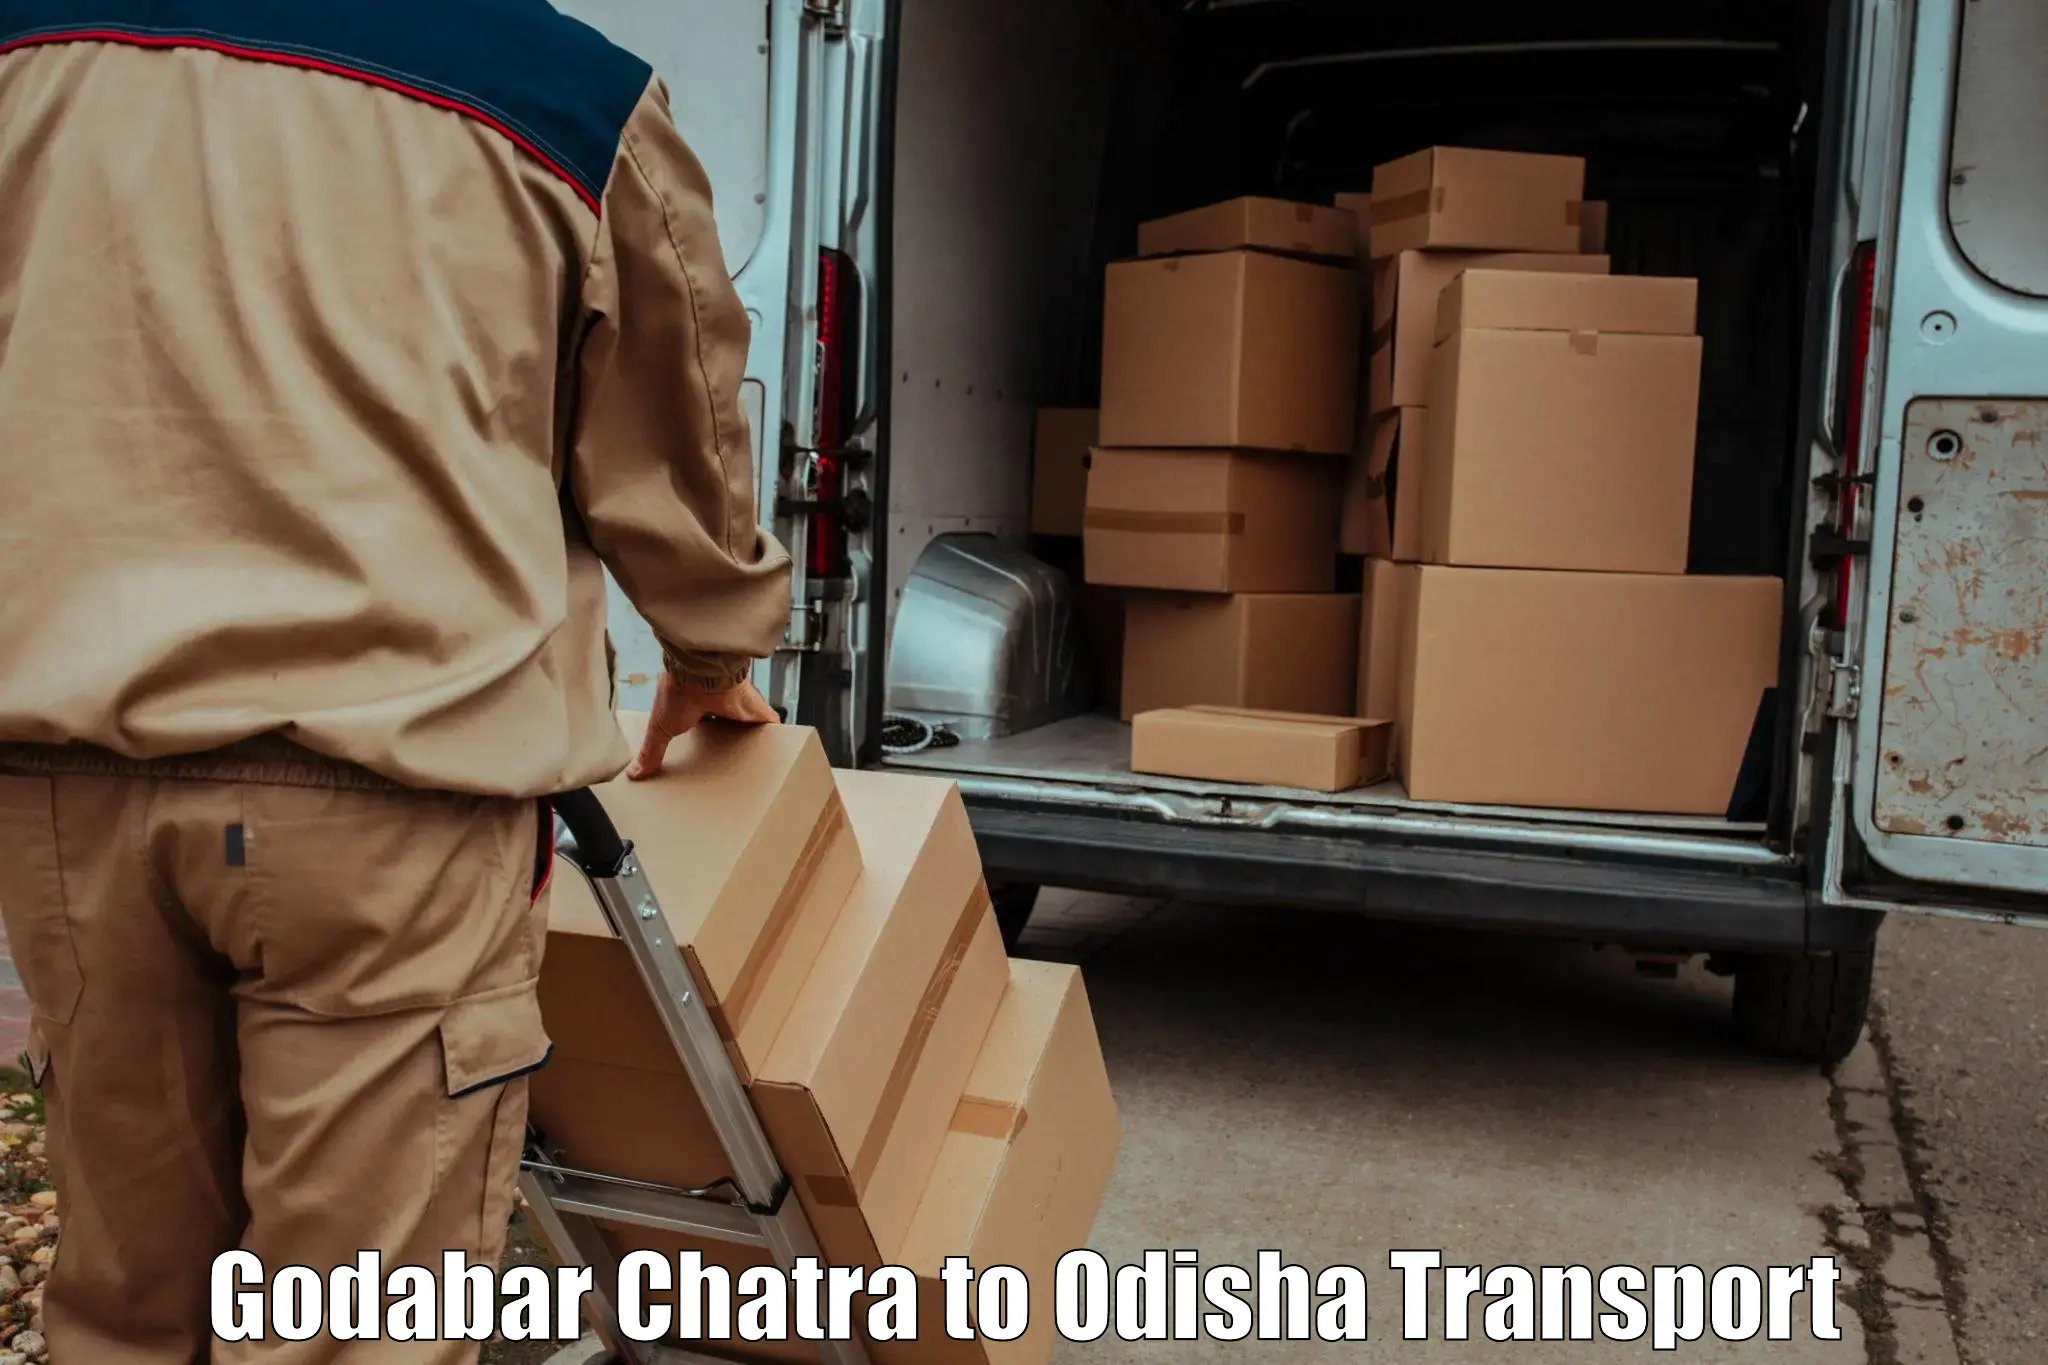 Domestic goods transportation services Godabar Chatra to Mahakalapada